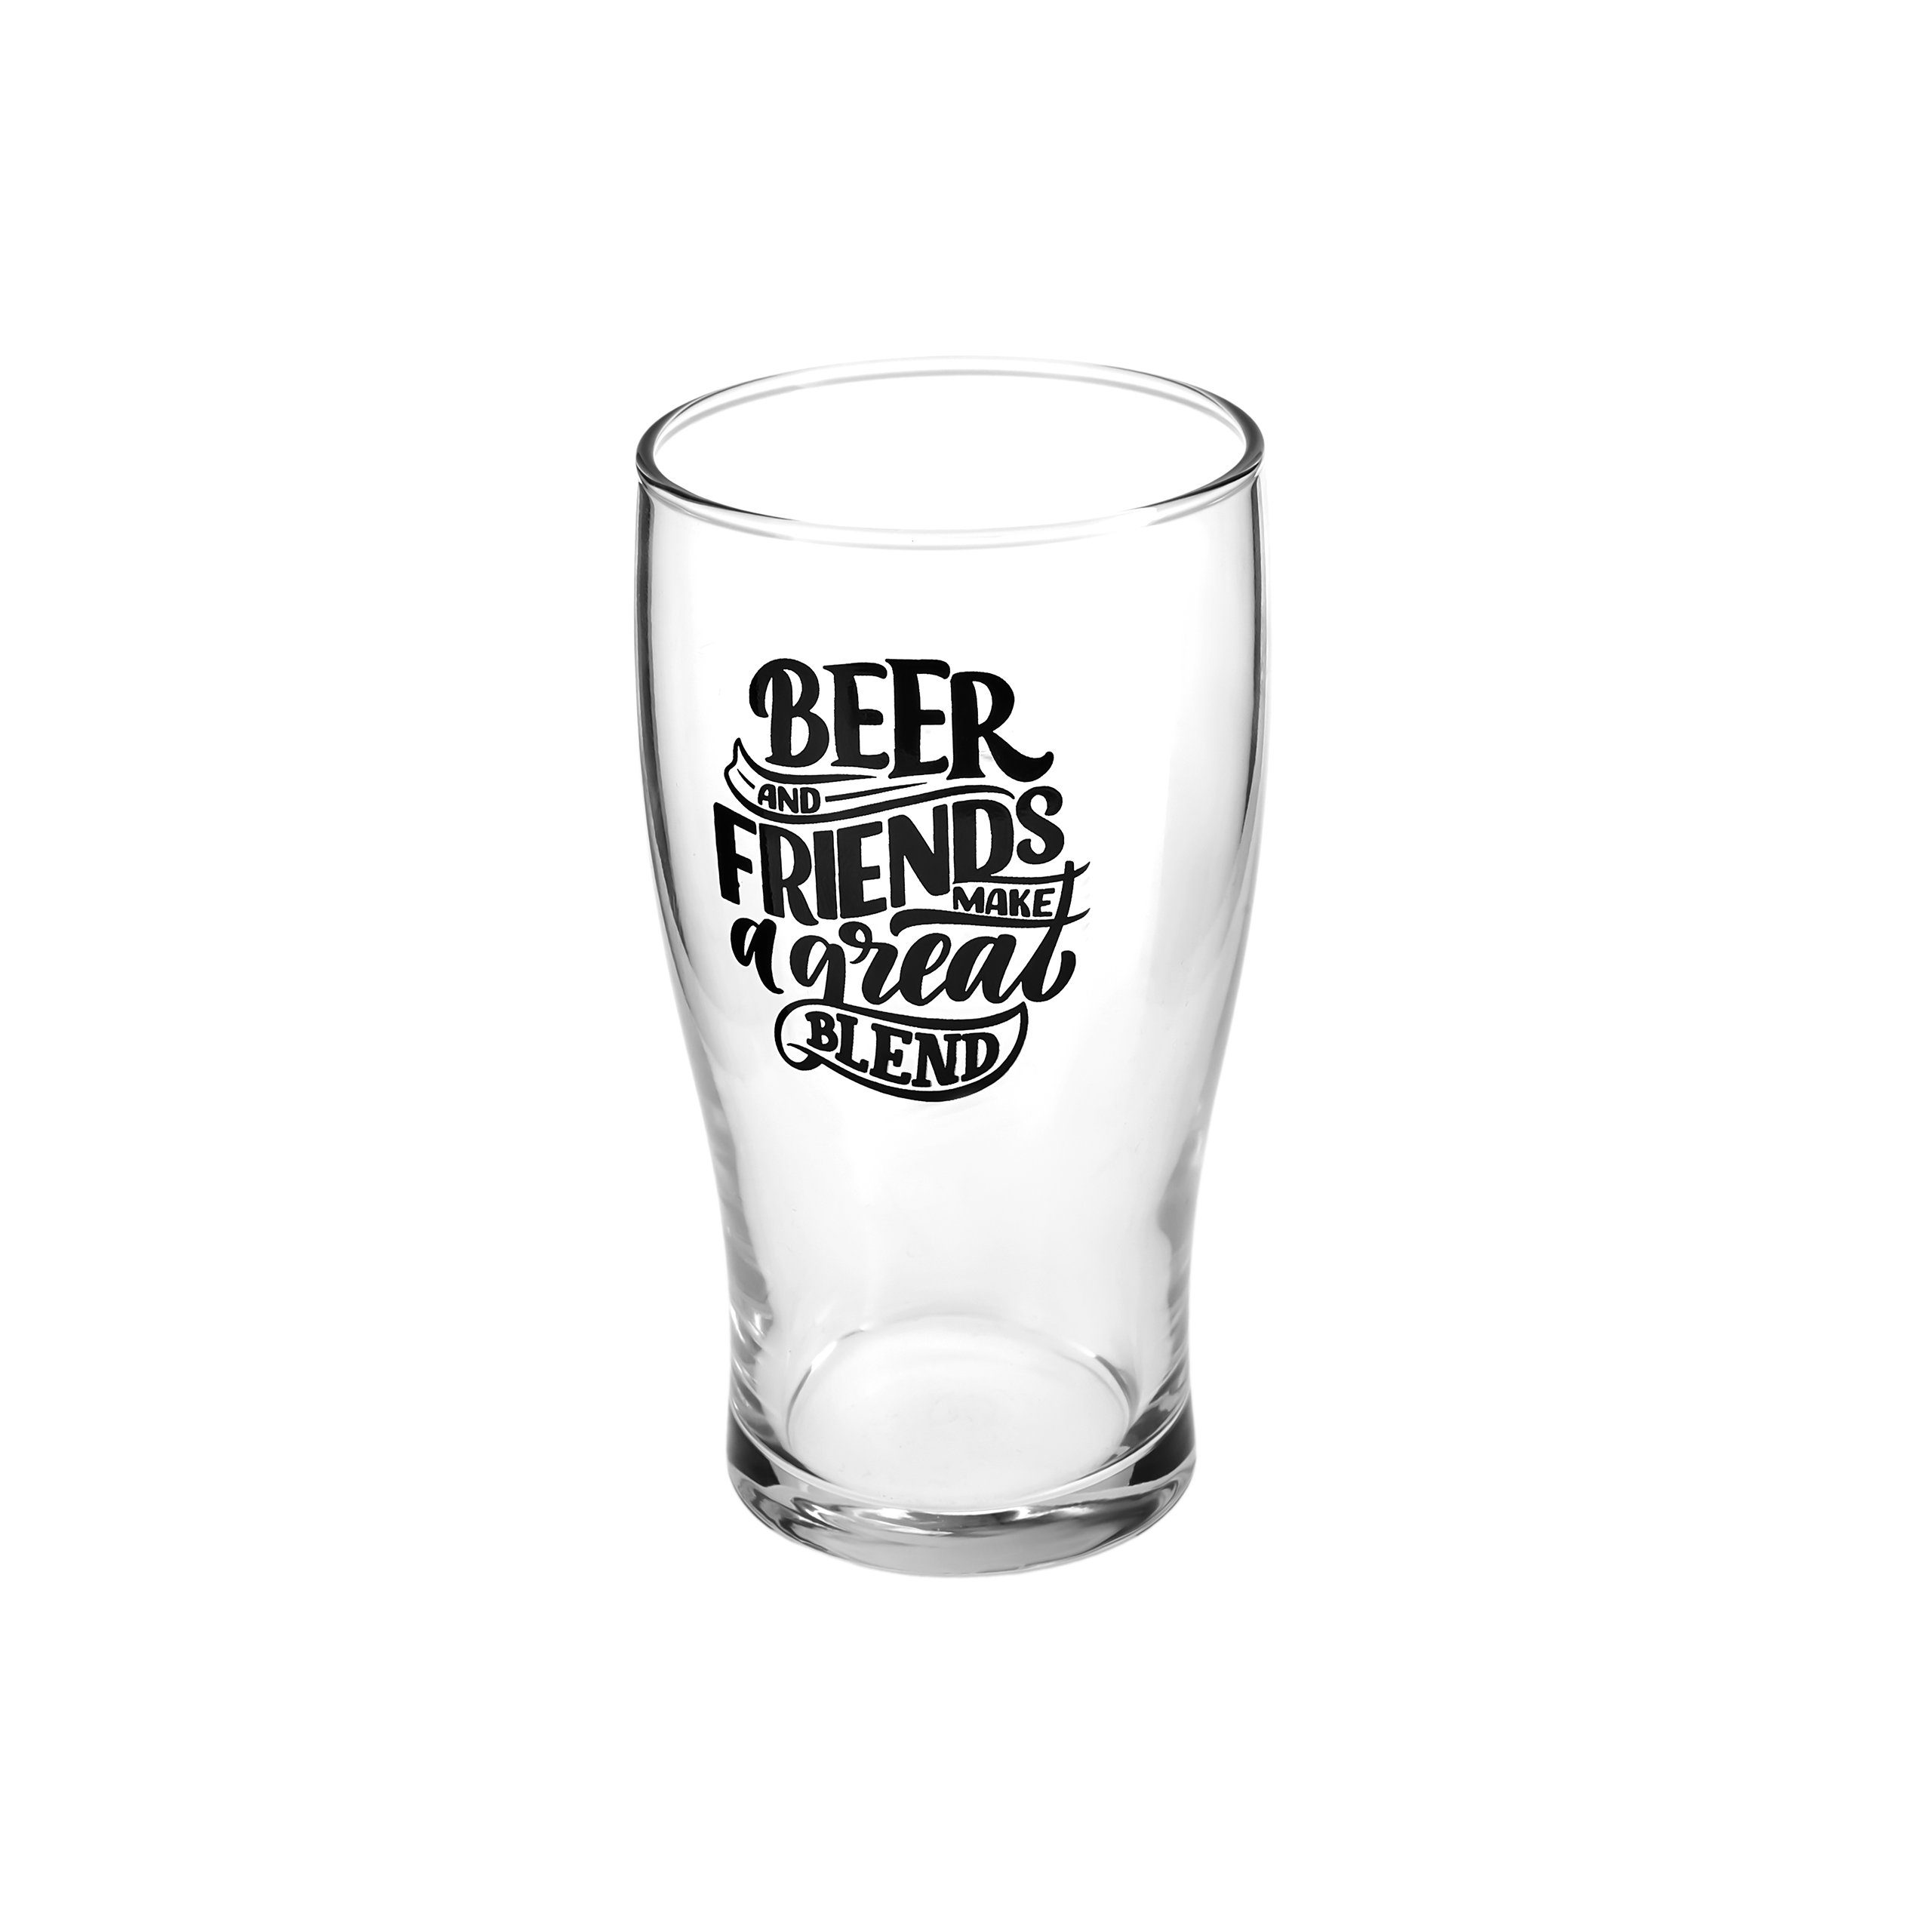 für 2 Glas, Glas Beerbecher Karaca Personen, 454ml Bierglas-set